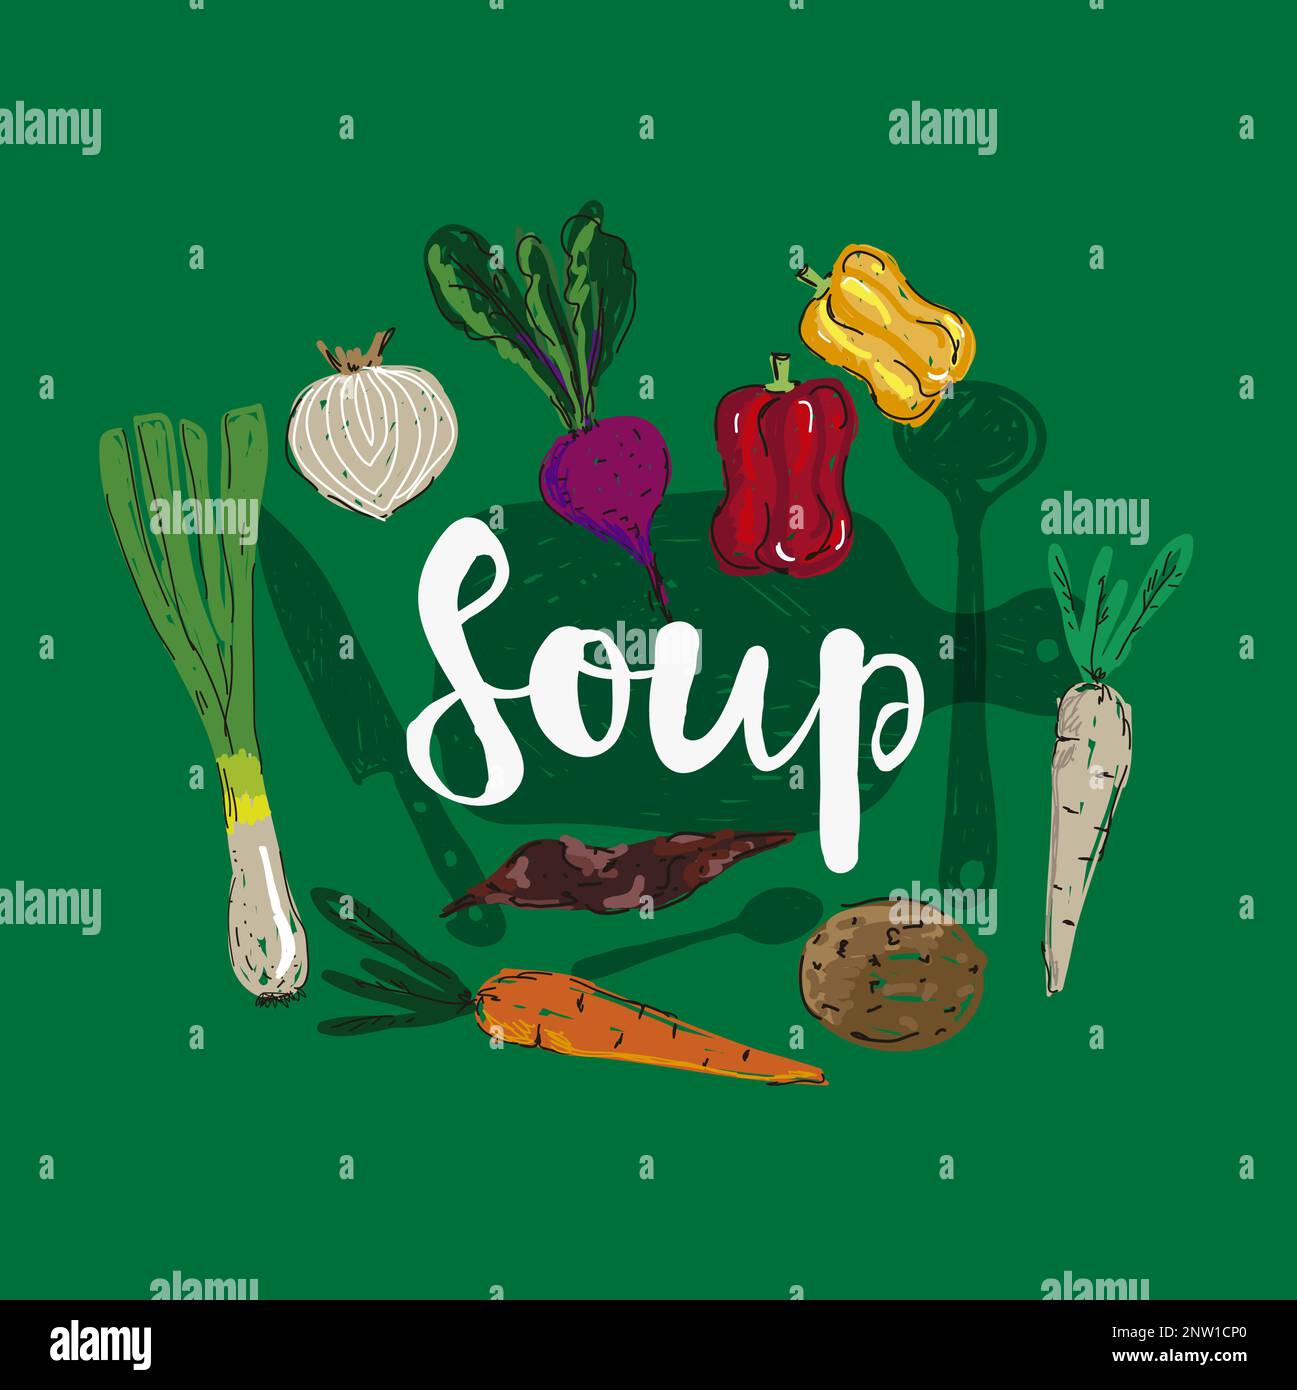 Frische Zutaten für vegetarische Speisen. Suppe in einem Topf mit Kartoffeln, Rüben, Paprika, Lauch, Zwiebeln und Karotten in Doodle-Style-Vektor-Illustraten Stock Vektor